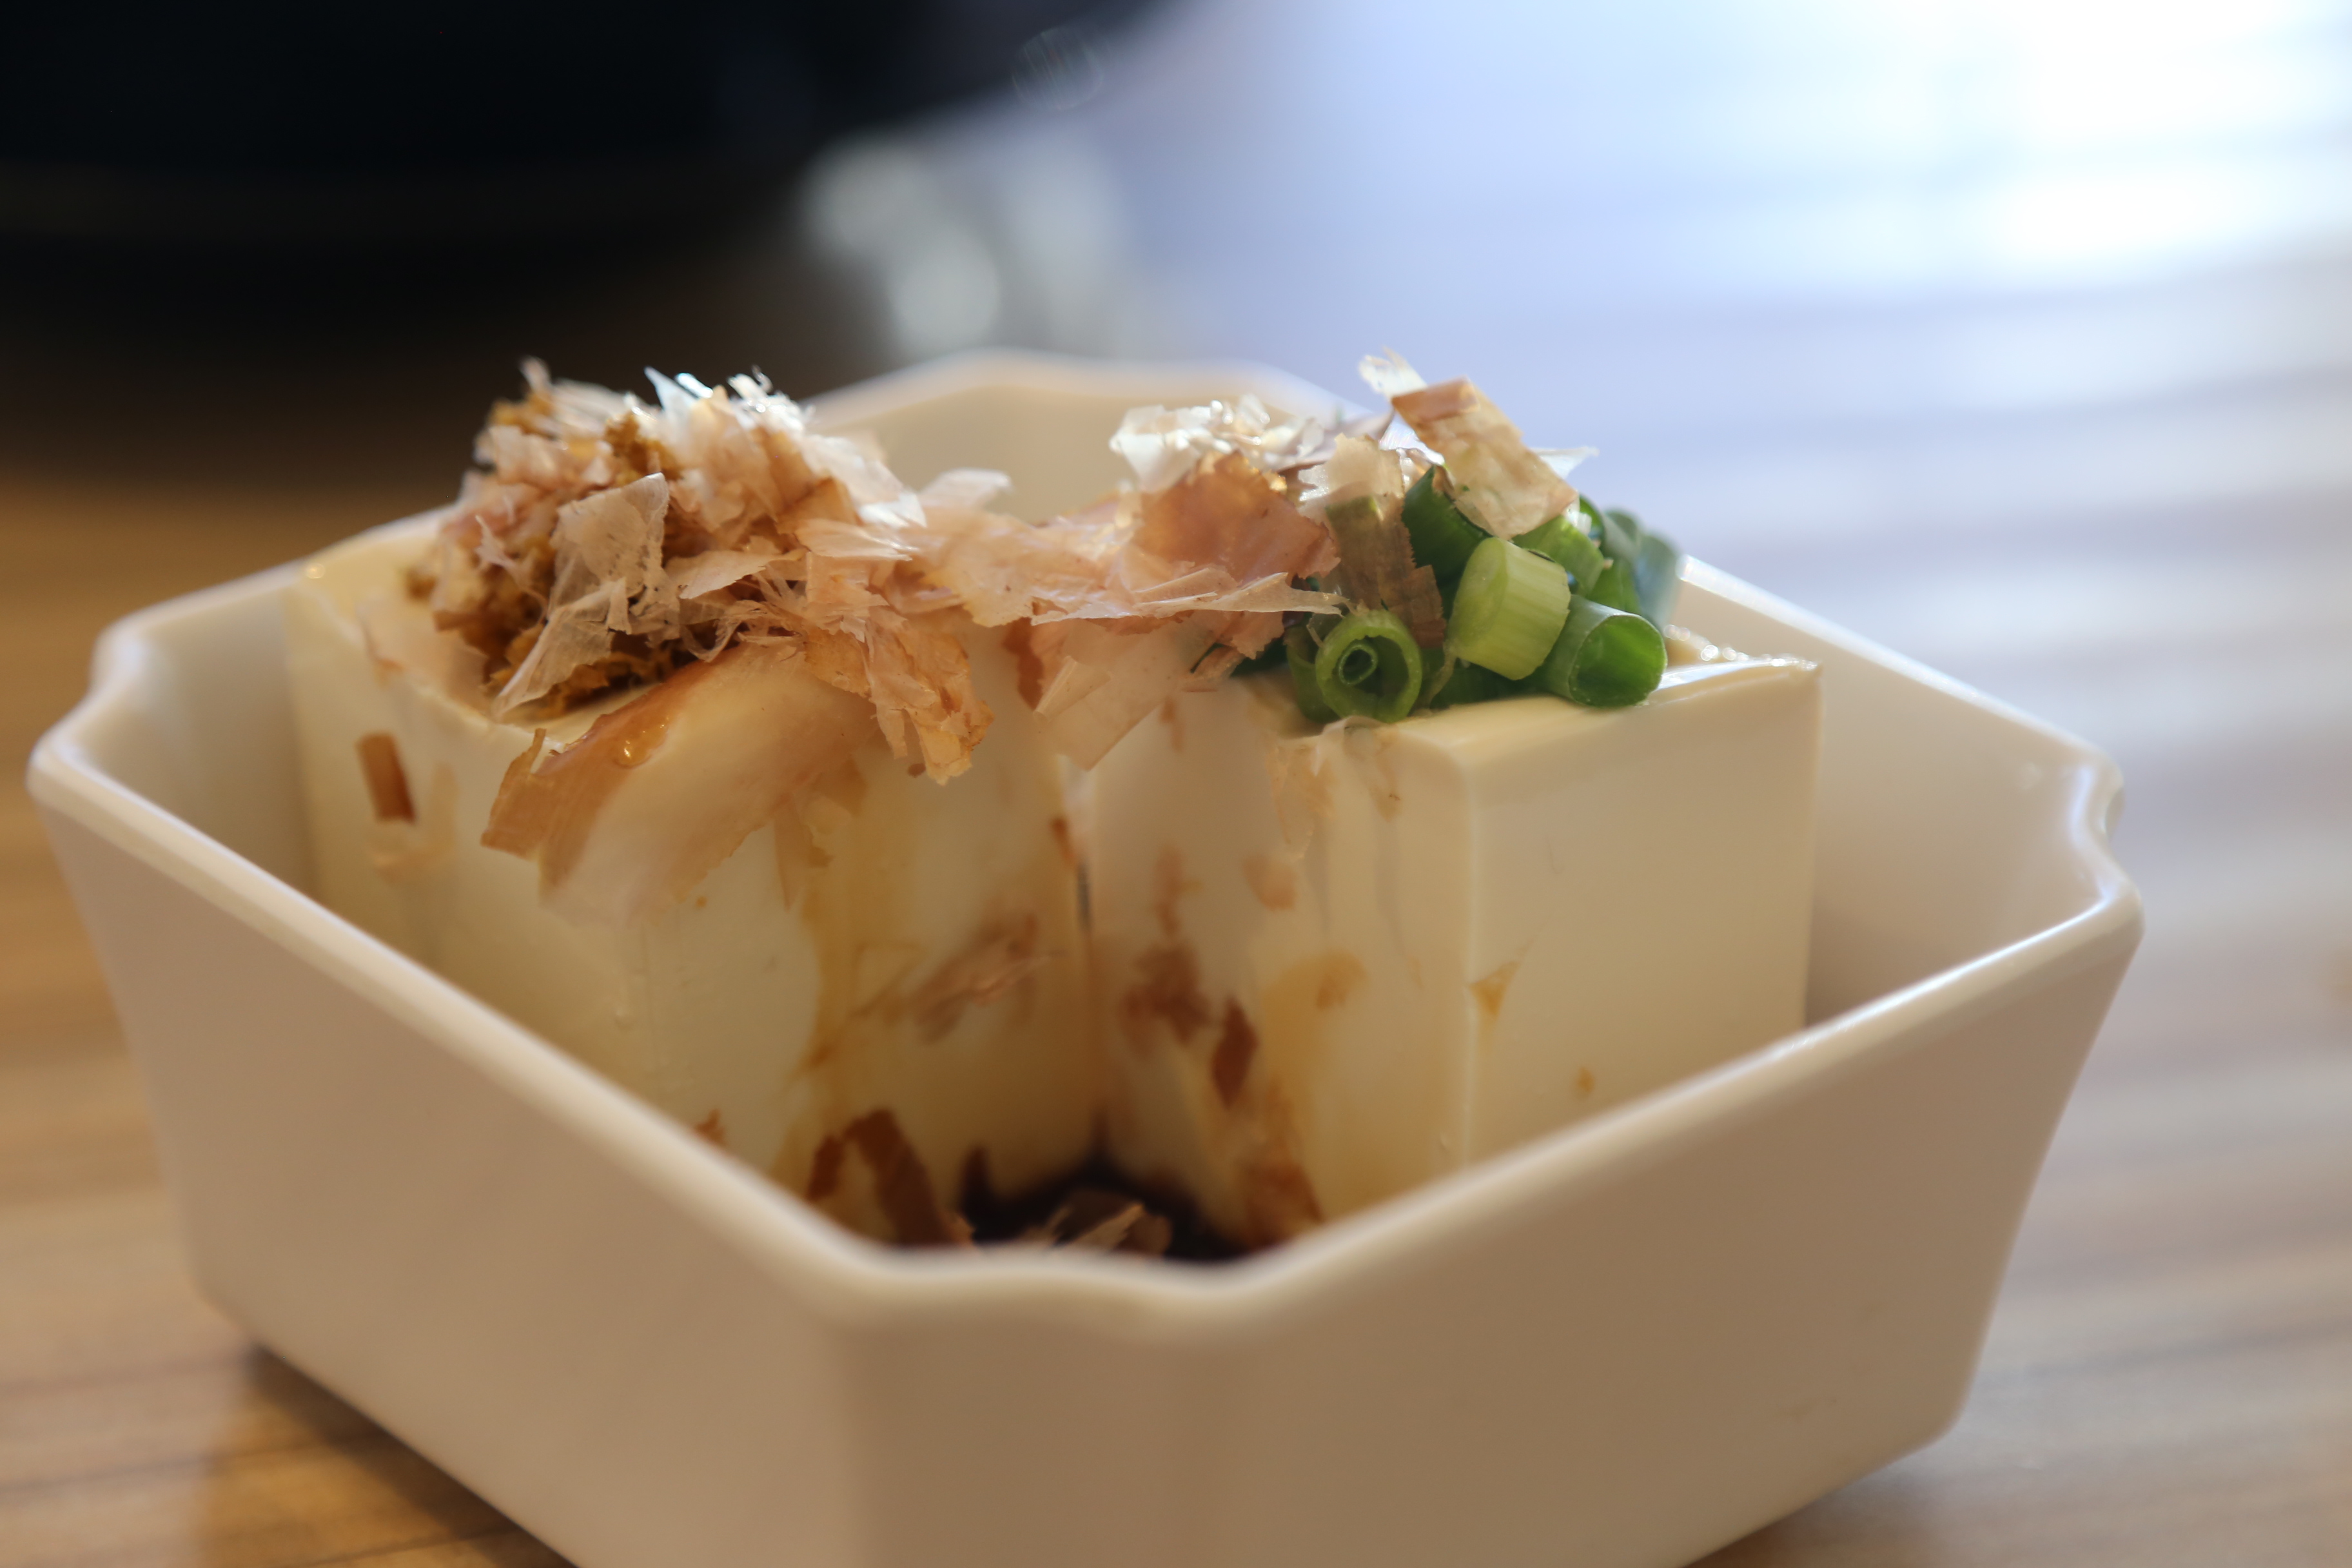 蔬菜肉酱的加入缓解了面条的单一口感冷豆腐有种果冻一般的q弹质感